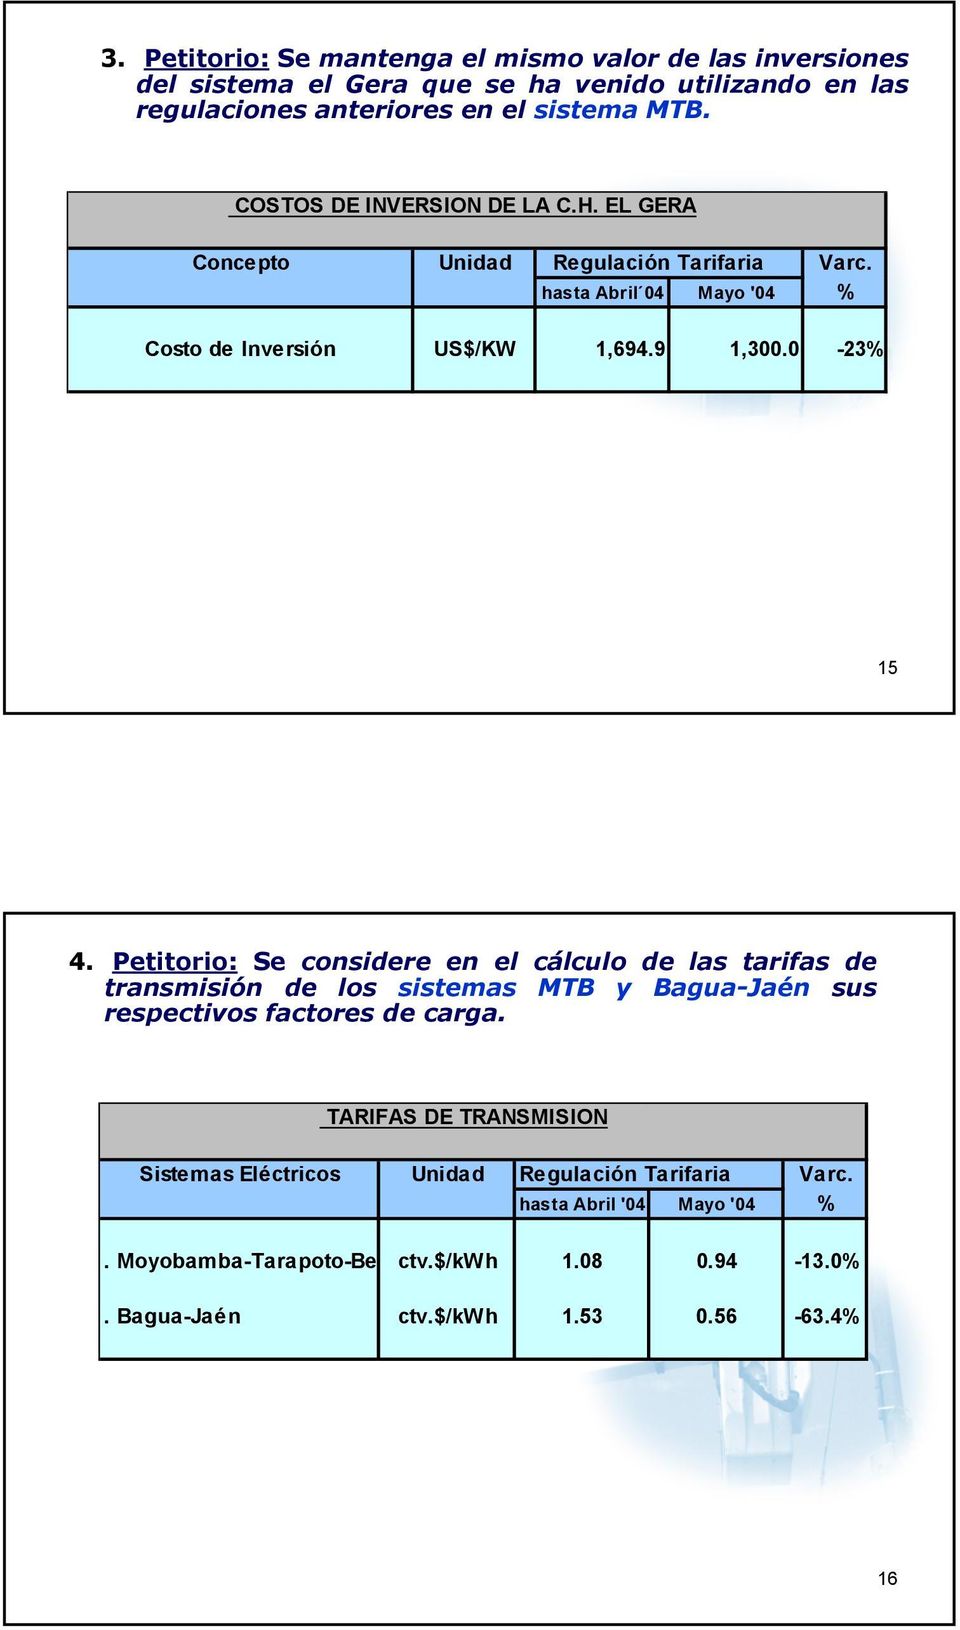 Petitorio: Se considere en el cálculo de las tarifas de transmisión de los sistemas MTB y Bagua-Jaén sus respectivos factores de carga.